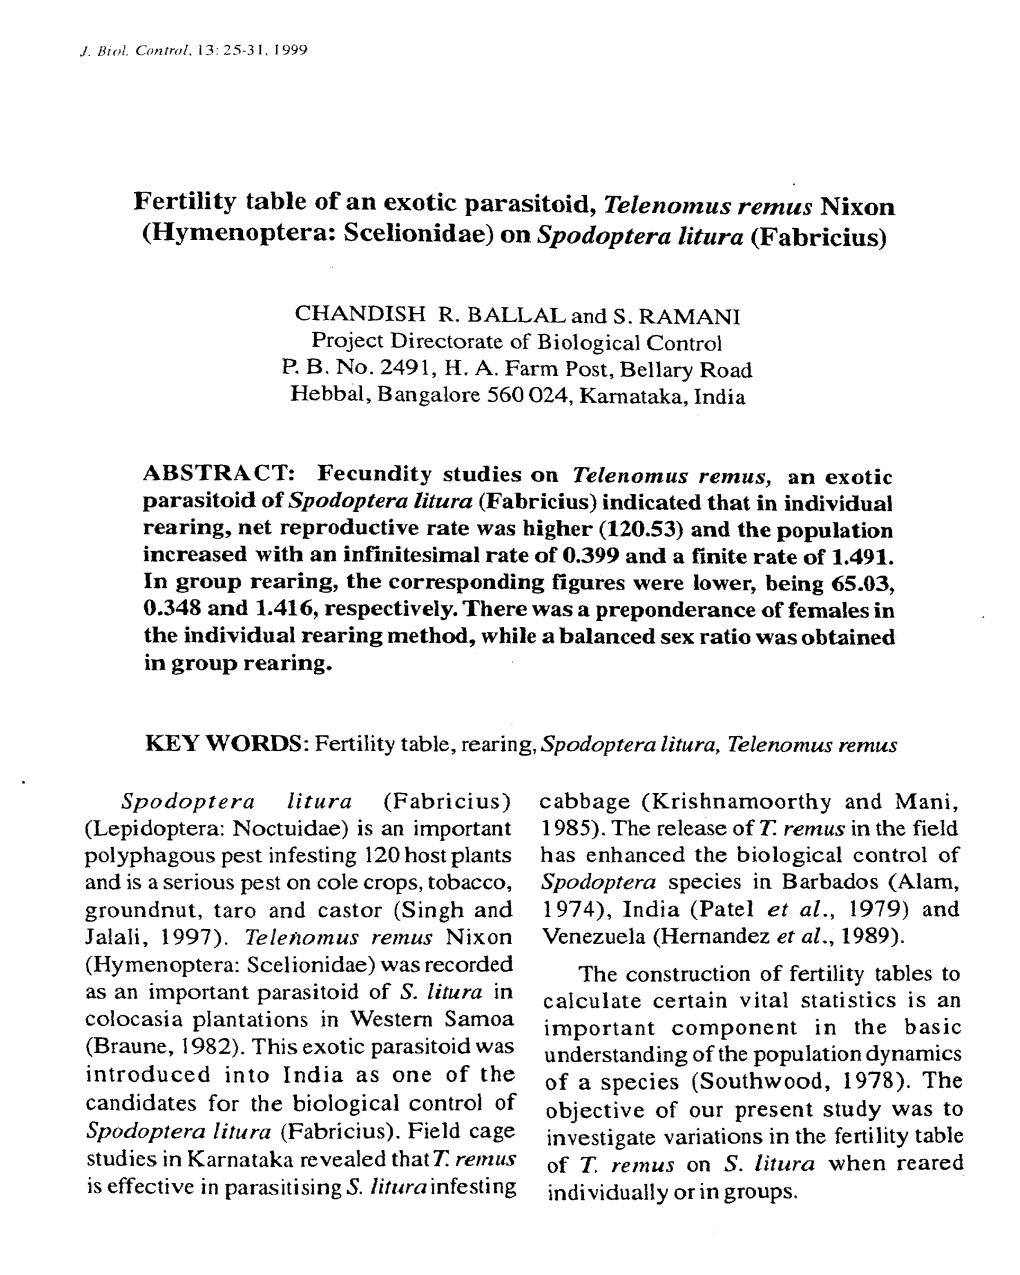 Fertility Table of an Exotic Parasitoid, Telenomus Remus Nixon (Hymenoptera: Scelionidae) on Spodoptera Litura (Fabricius)